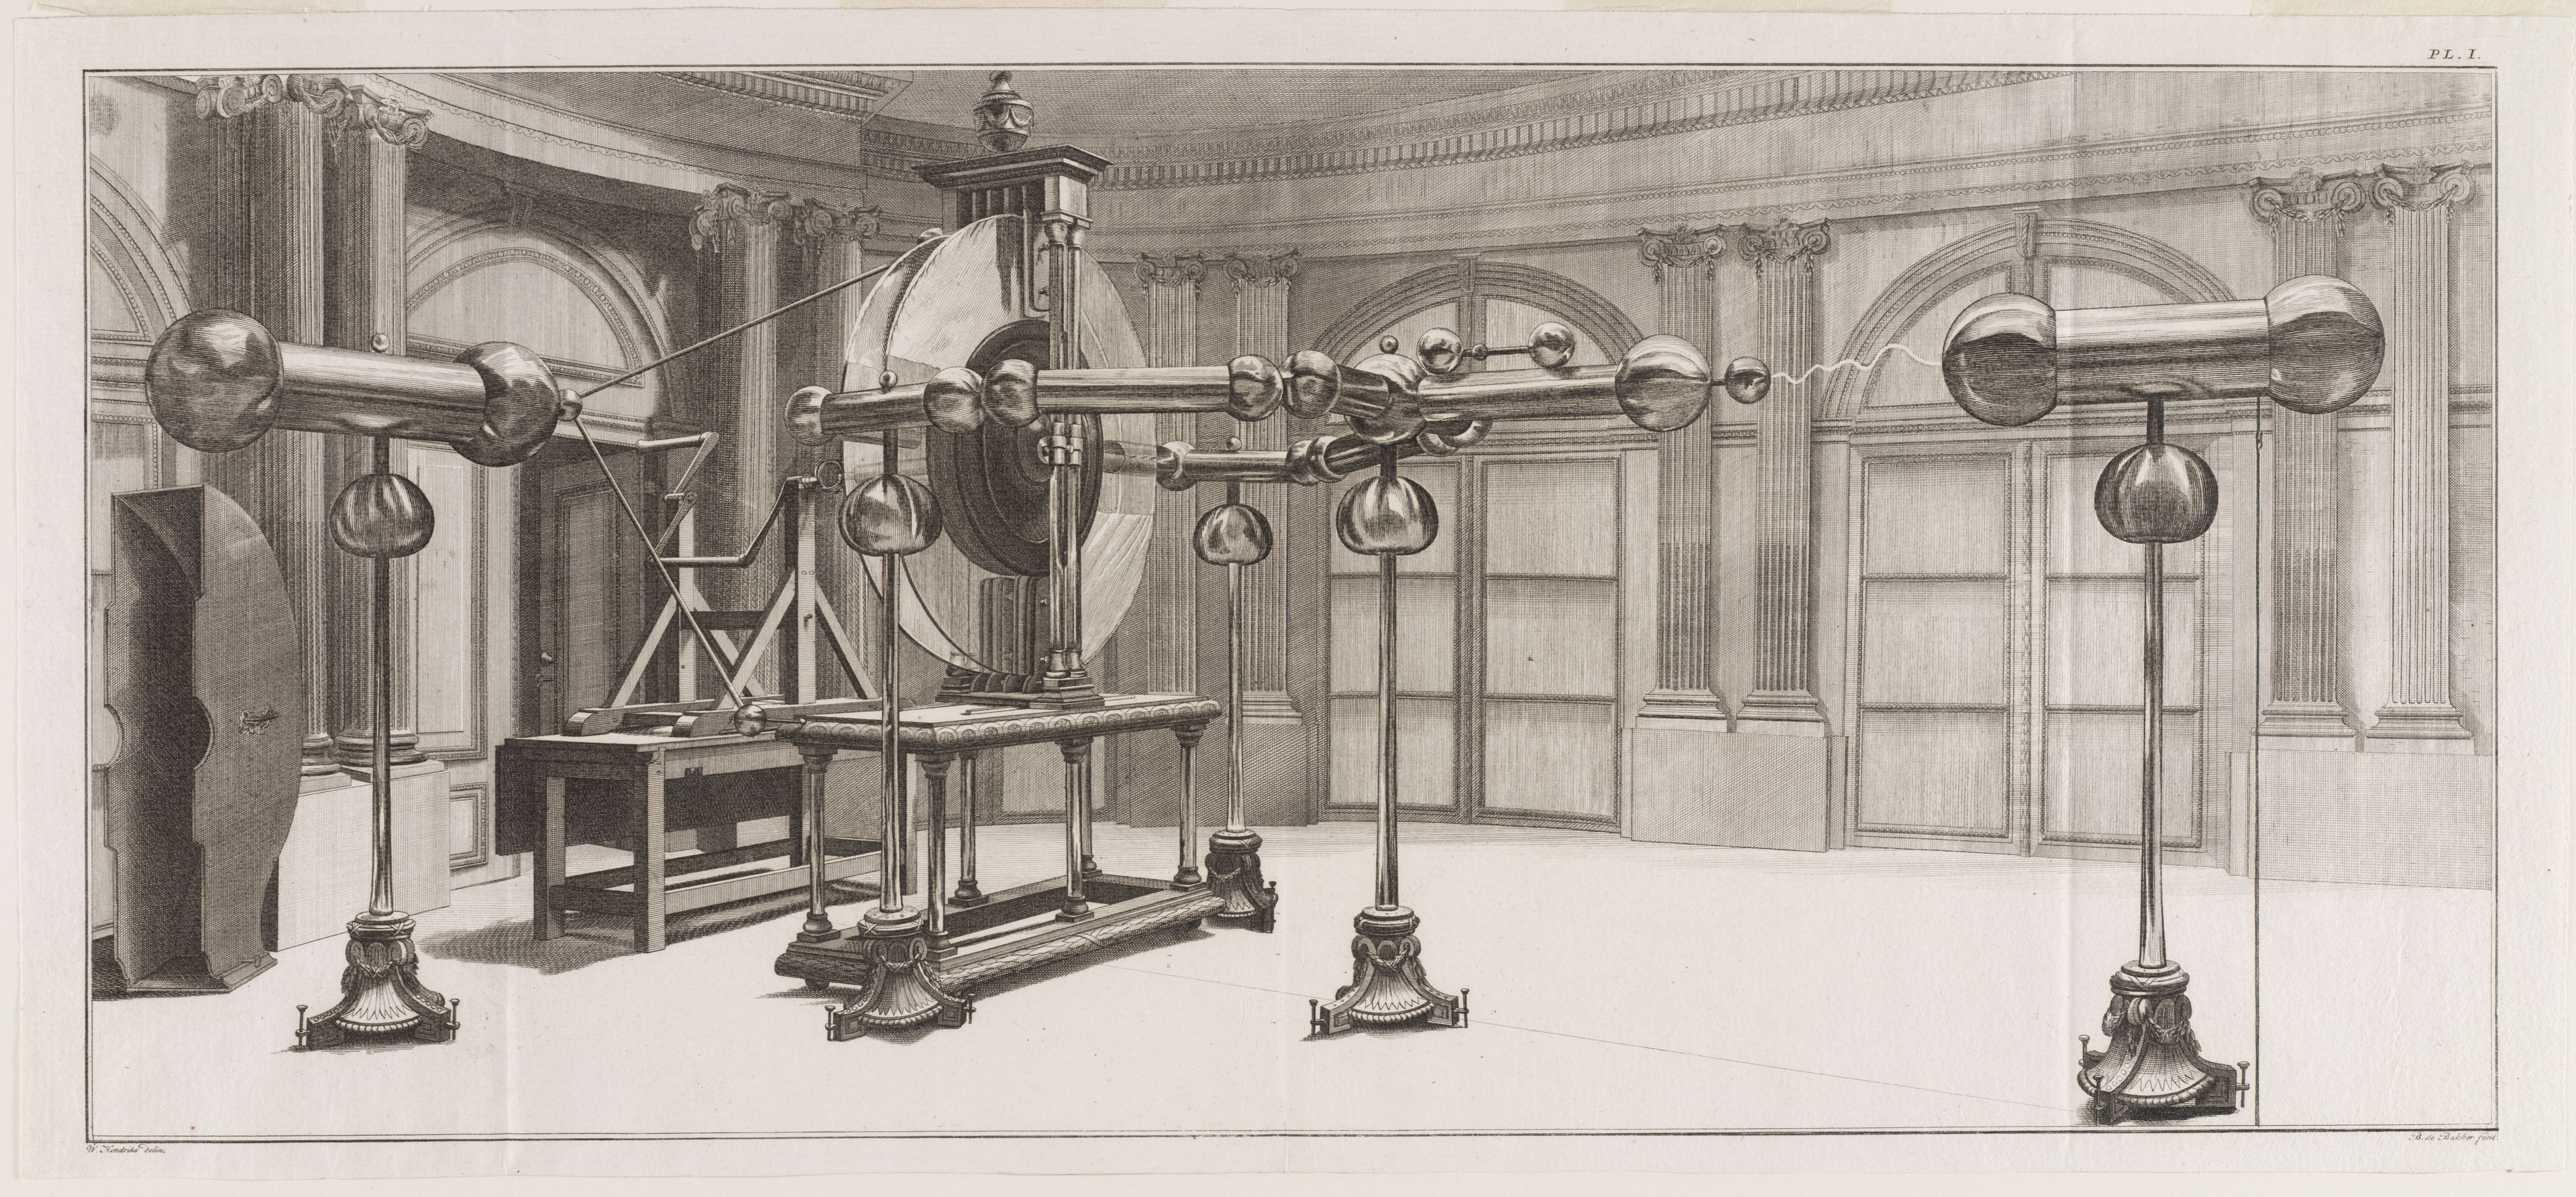 Barent de Bakker, De Grote Electriseermachine van Martinus van Marum in de Ovale Zaal van Teylers Museum, 1800.